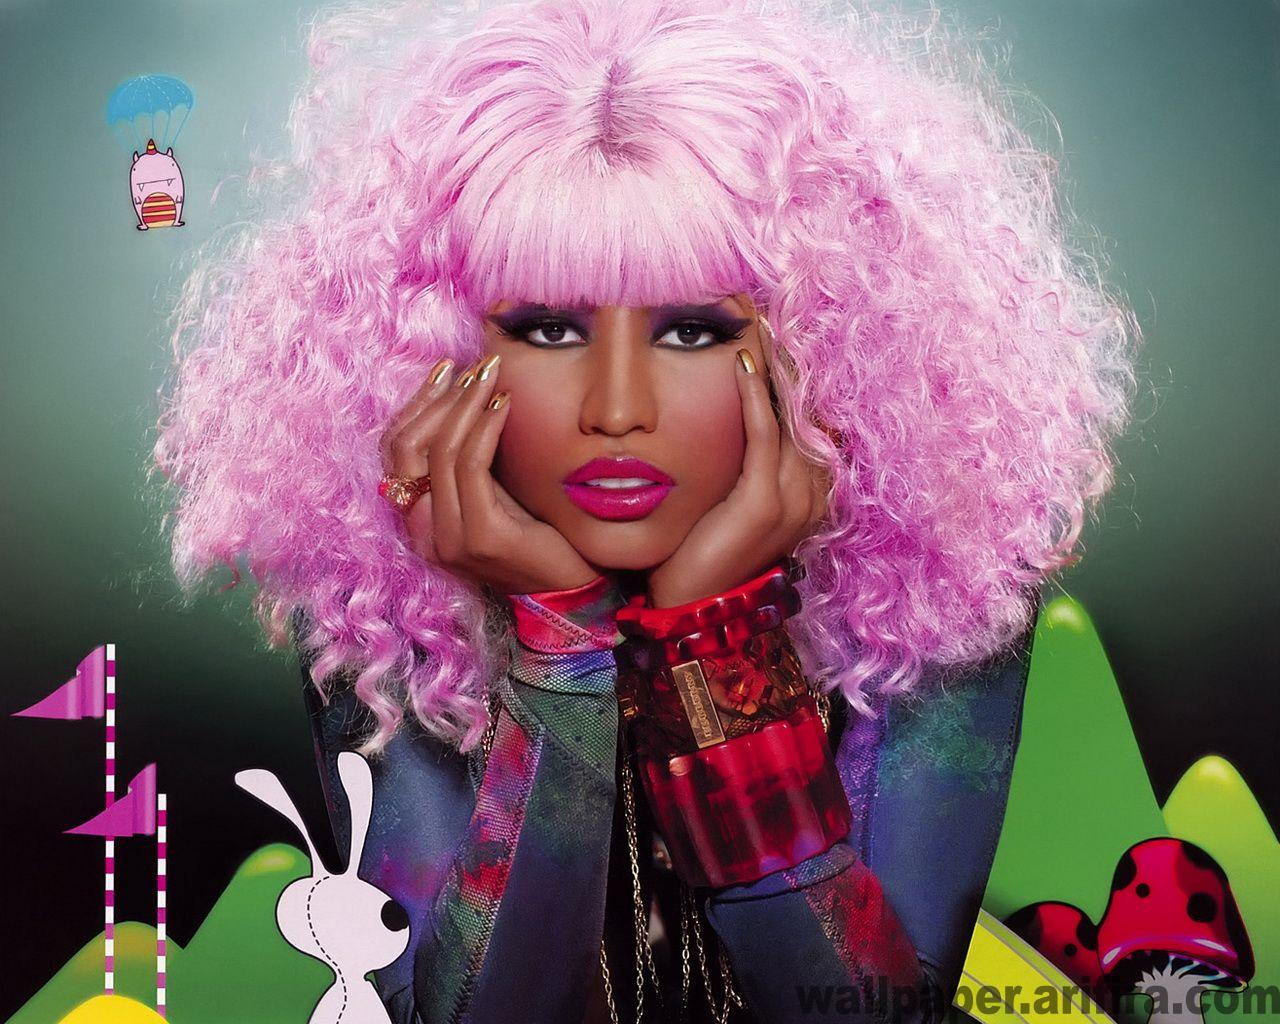 Nicki Minaj Wallpaper for BackgroundMusic Wallpapers